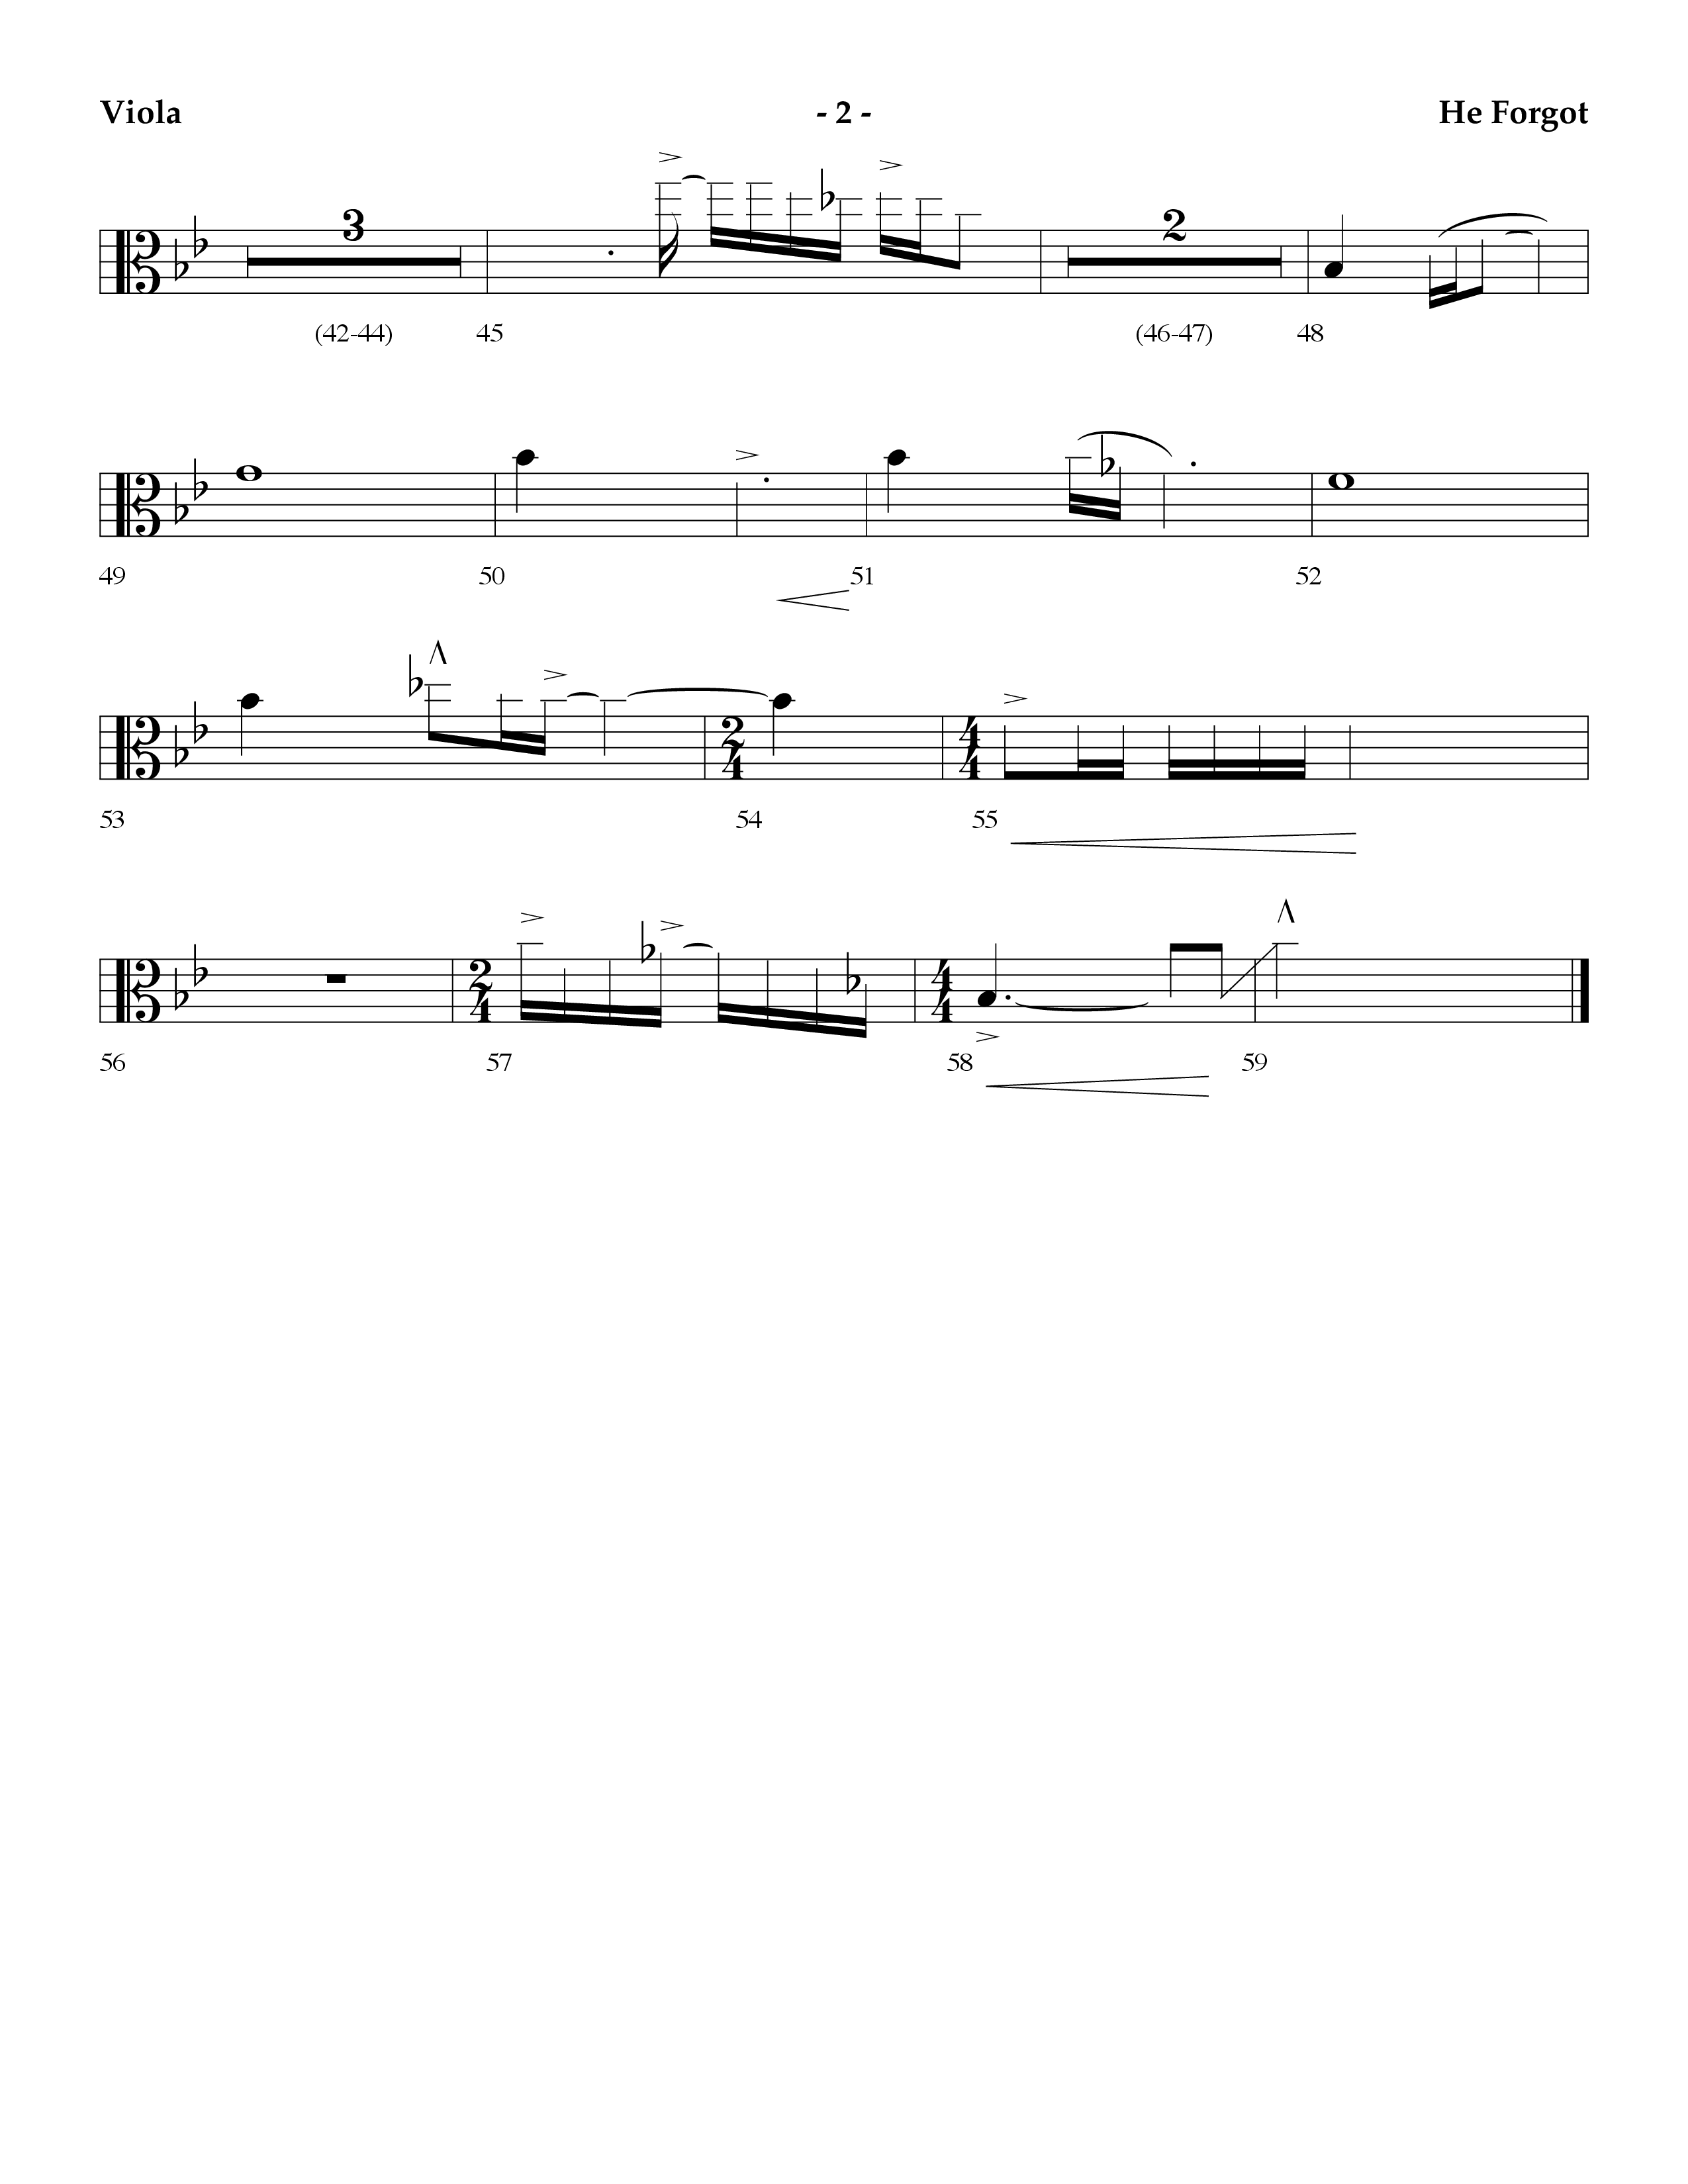 He Forgot (Choral Anthem SATB) Viola (Lifeway Choral / Arr. Cliff Duren)